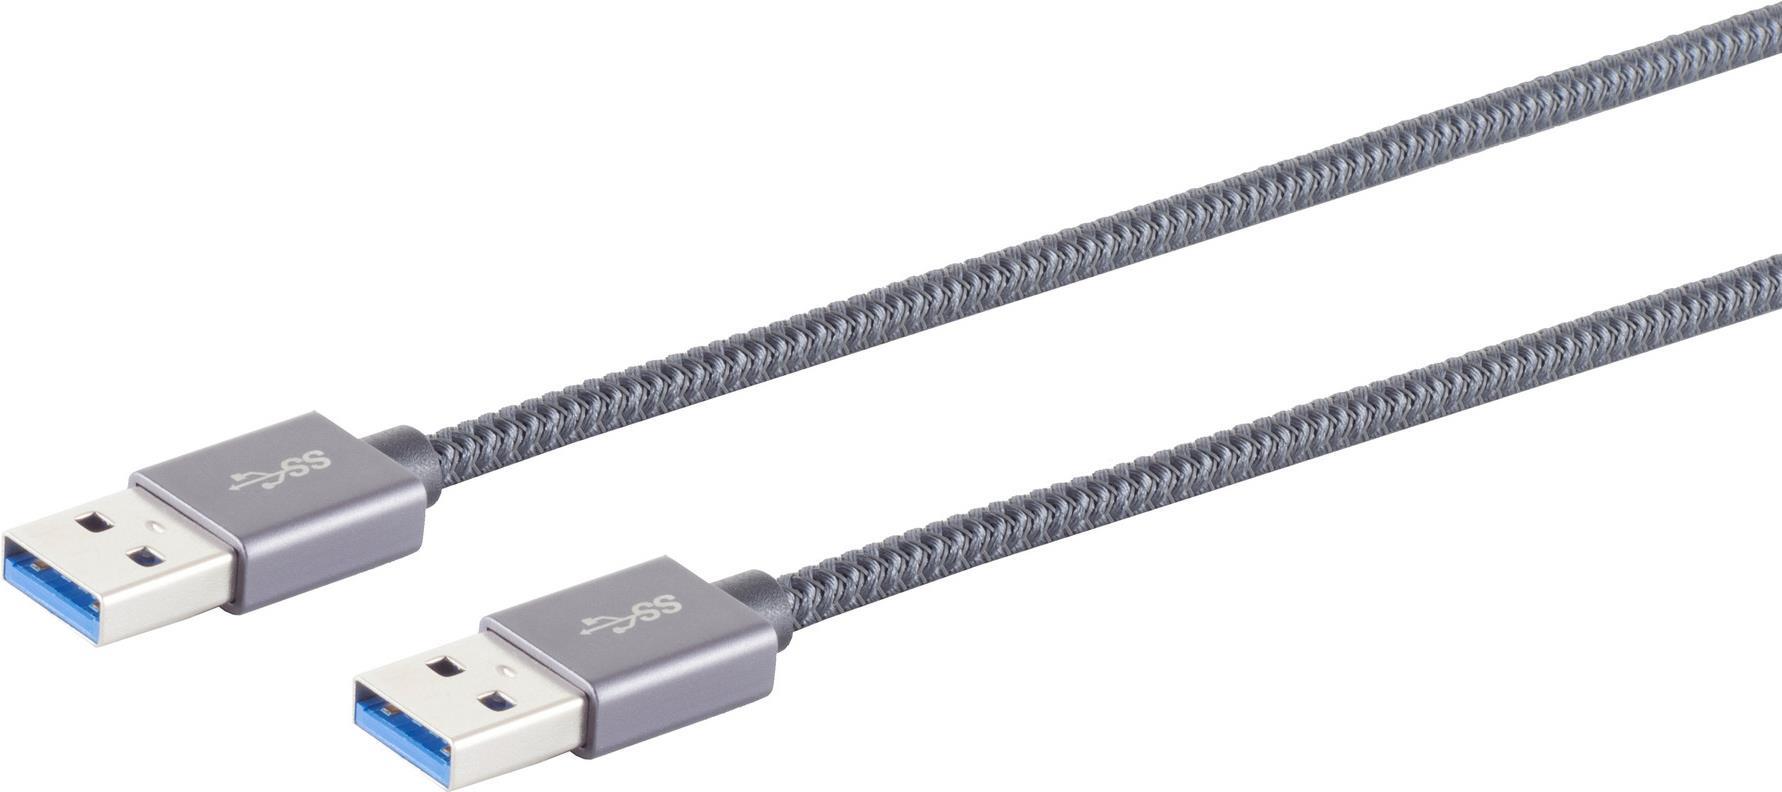 S/CONN maximum connectivity USB A-A Kabel--USB-A Verbindungskabel, 3.2 Gen 2, Pro, 2m (13-37030)